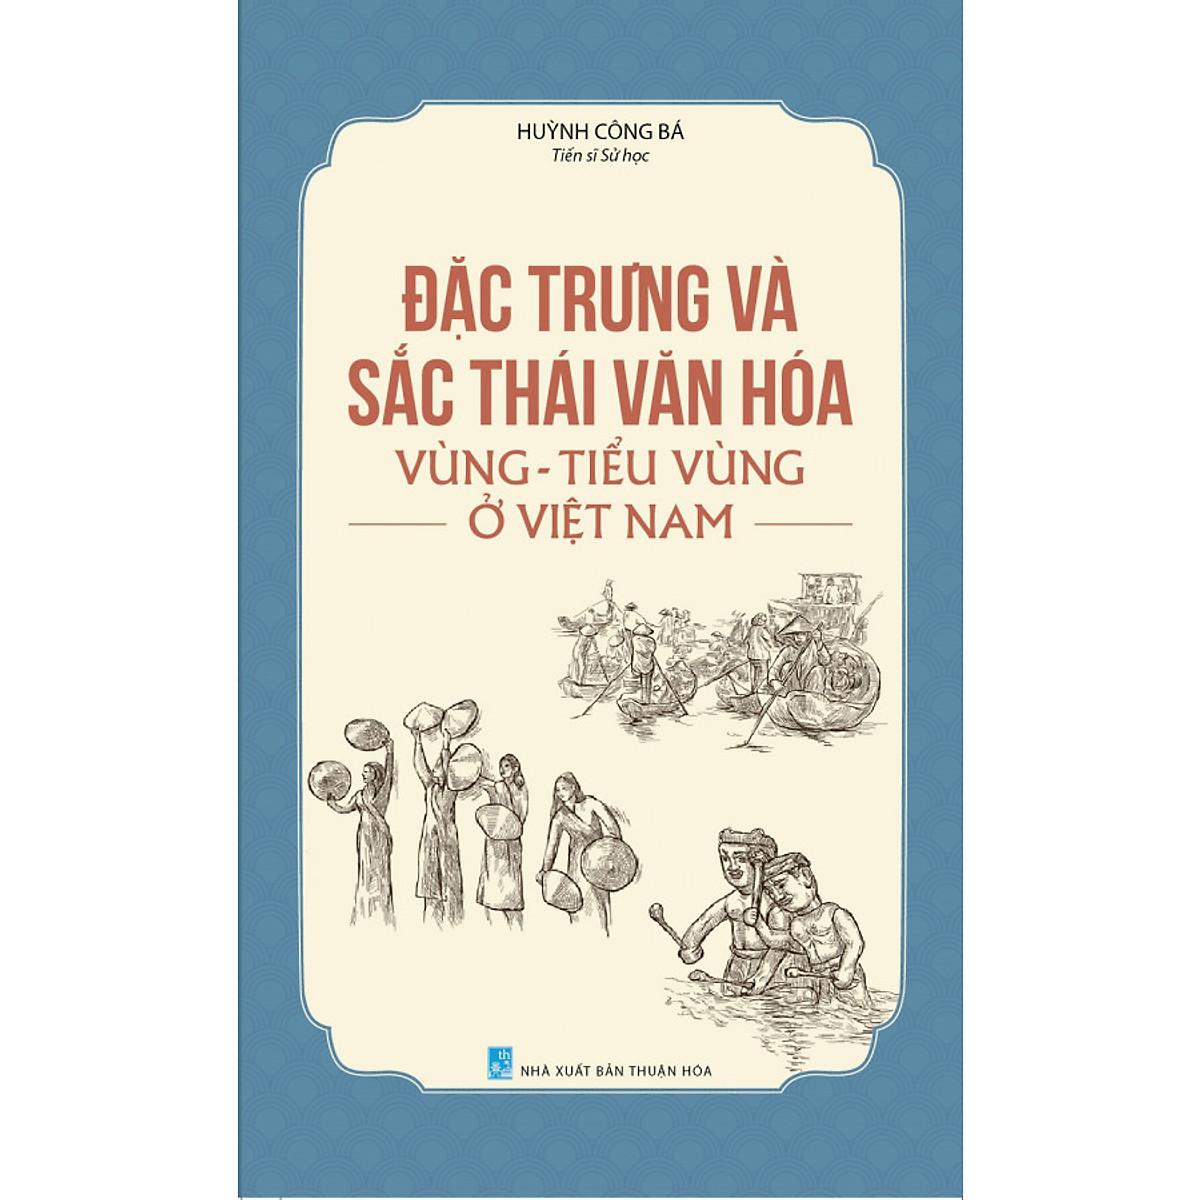 Đặc Trưng Và Sắc Thái Văn Hóa Vùng - Tiểu Vùng Ở Việt Nam